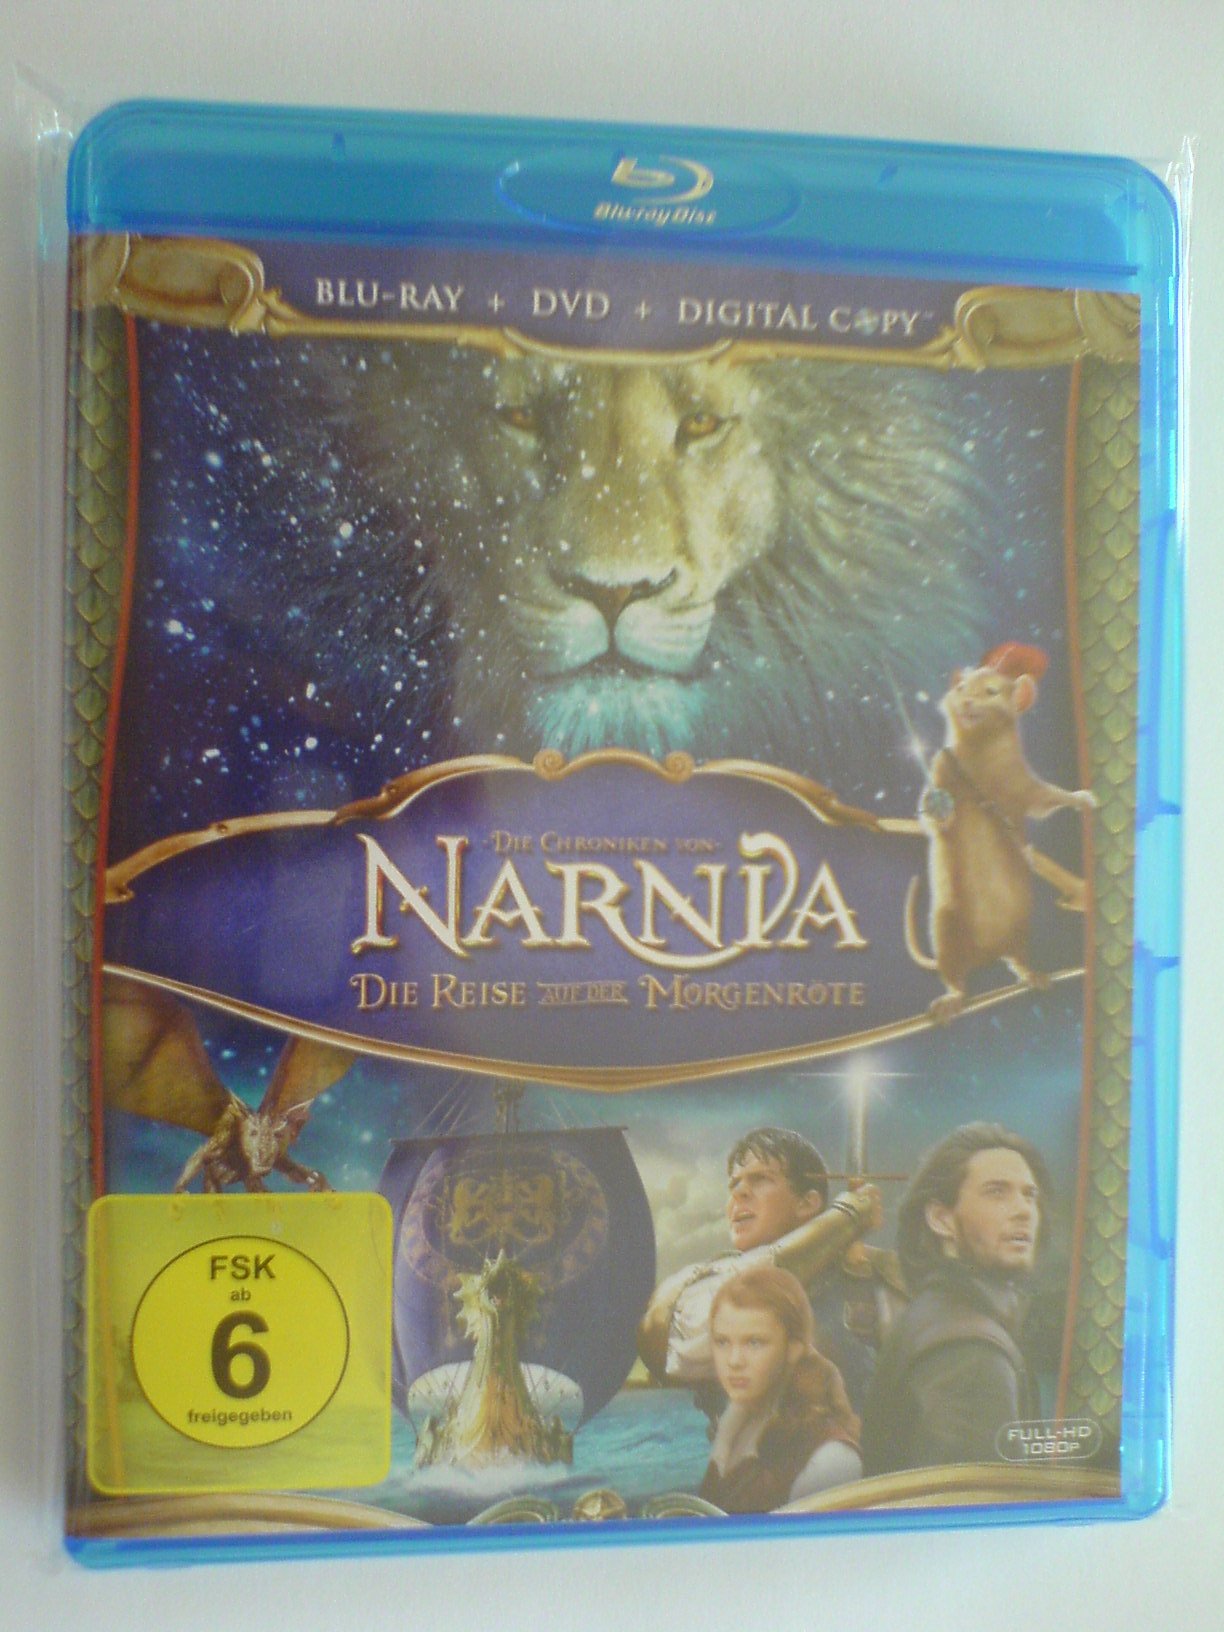 Narnia3.JPG